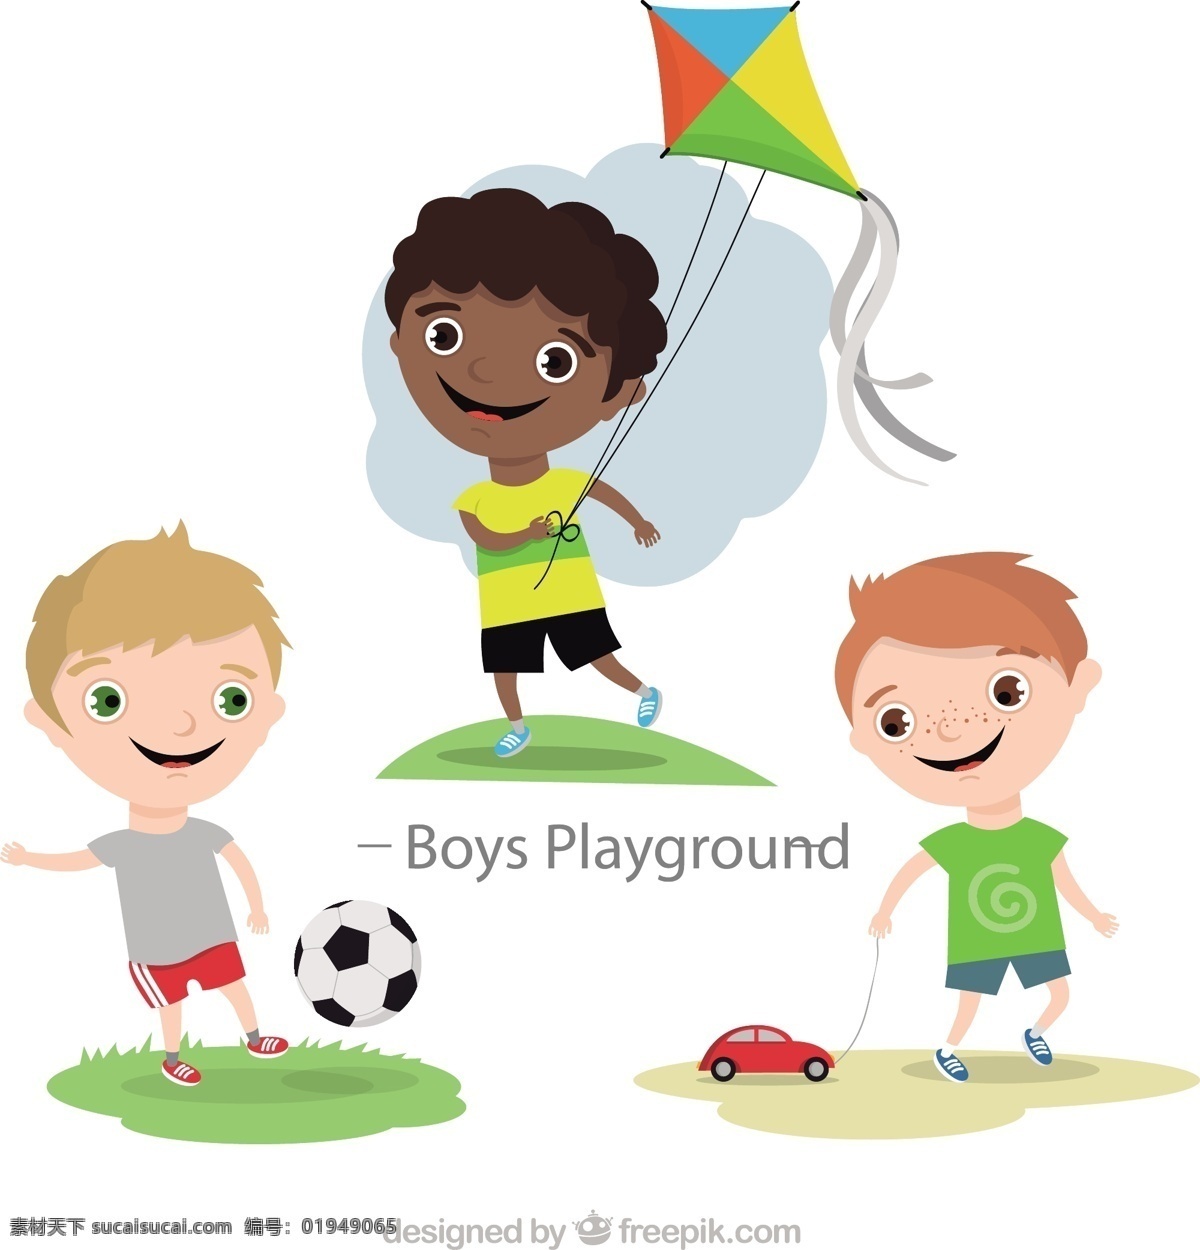 男孩在玩足球 车 人 儿童 足球 快乐 孩子 朋友 游戏 球 娱乐 风筝 游乐场 男孩 玩 幼稚